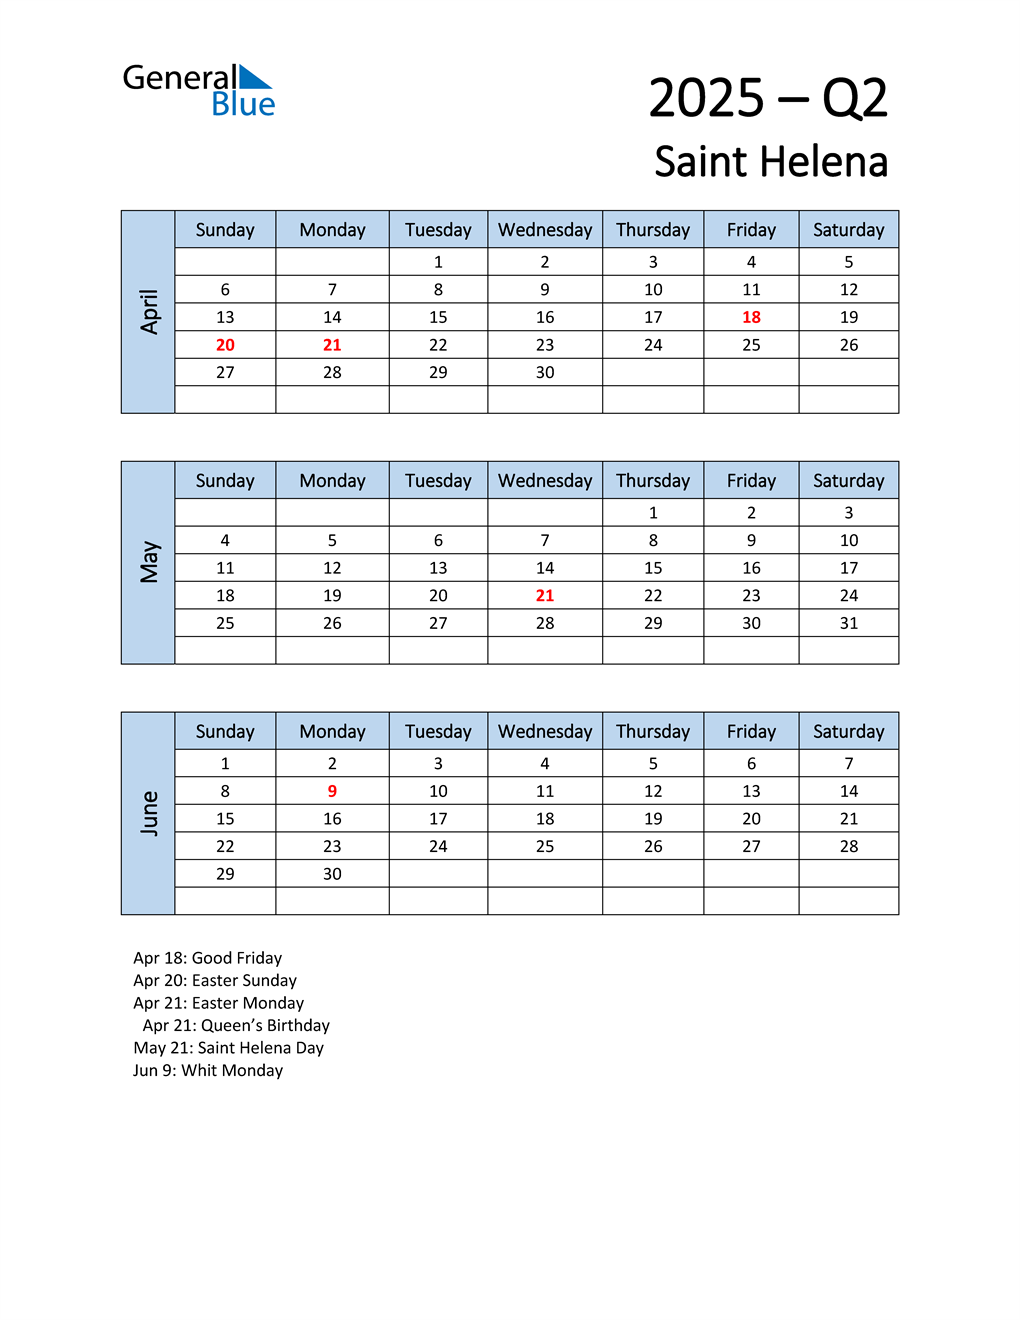 Q2 2025 Quarterly Calendar with Saint Helena Holidays